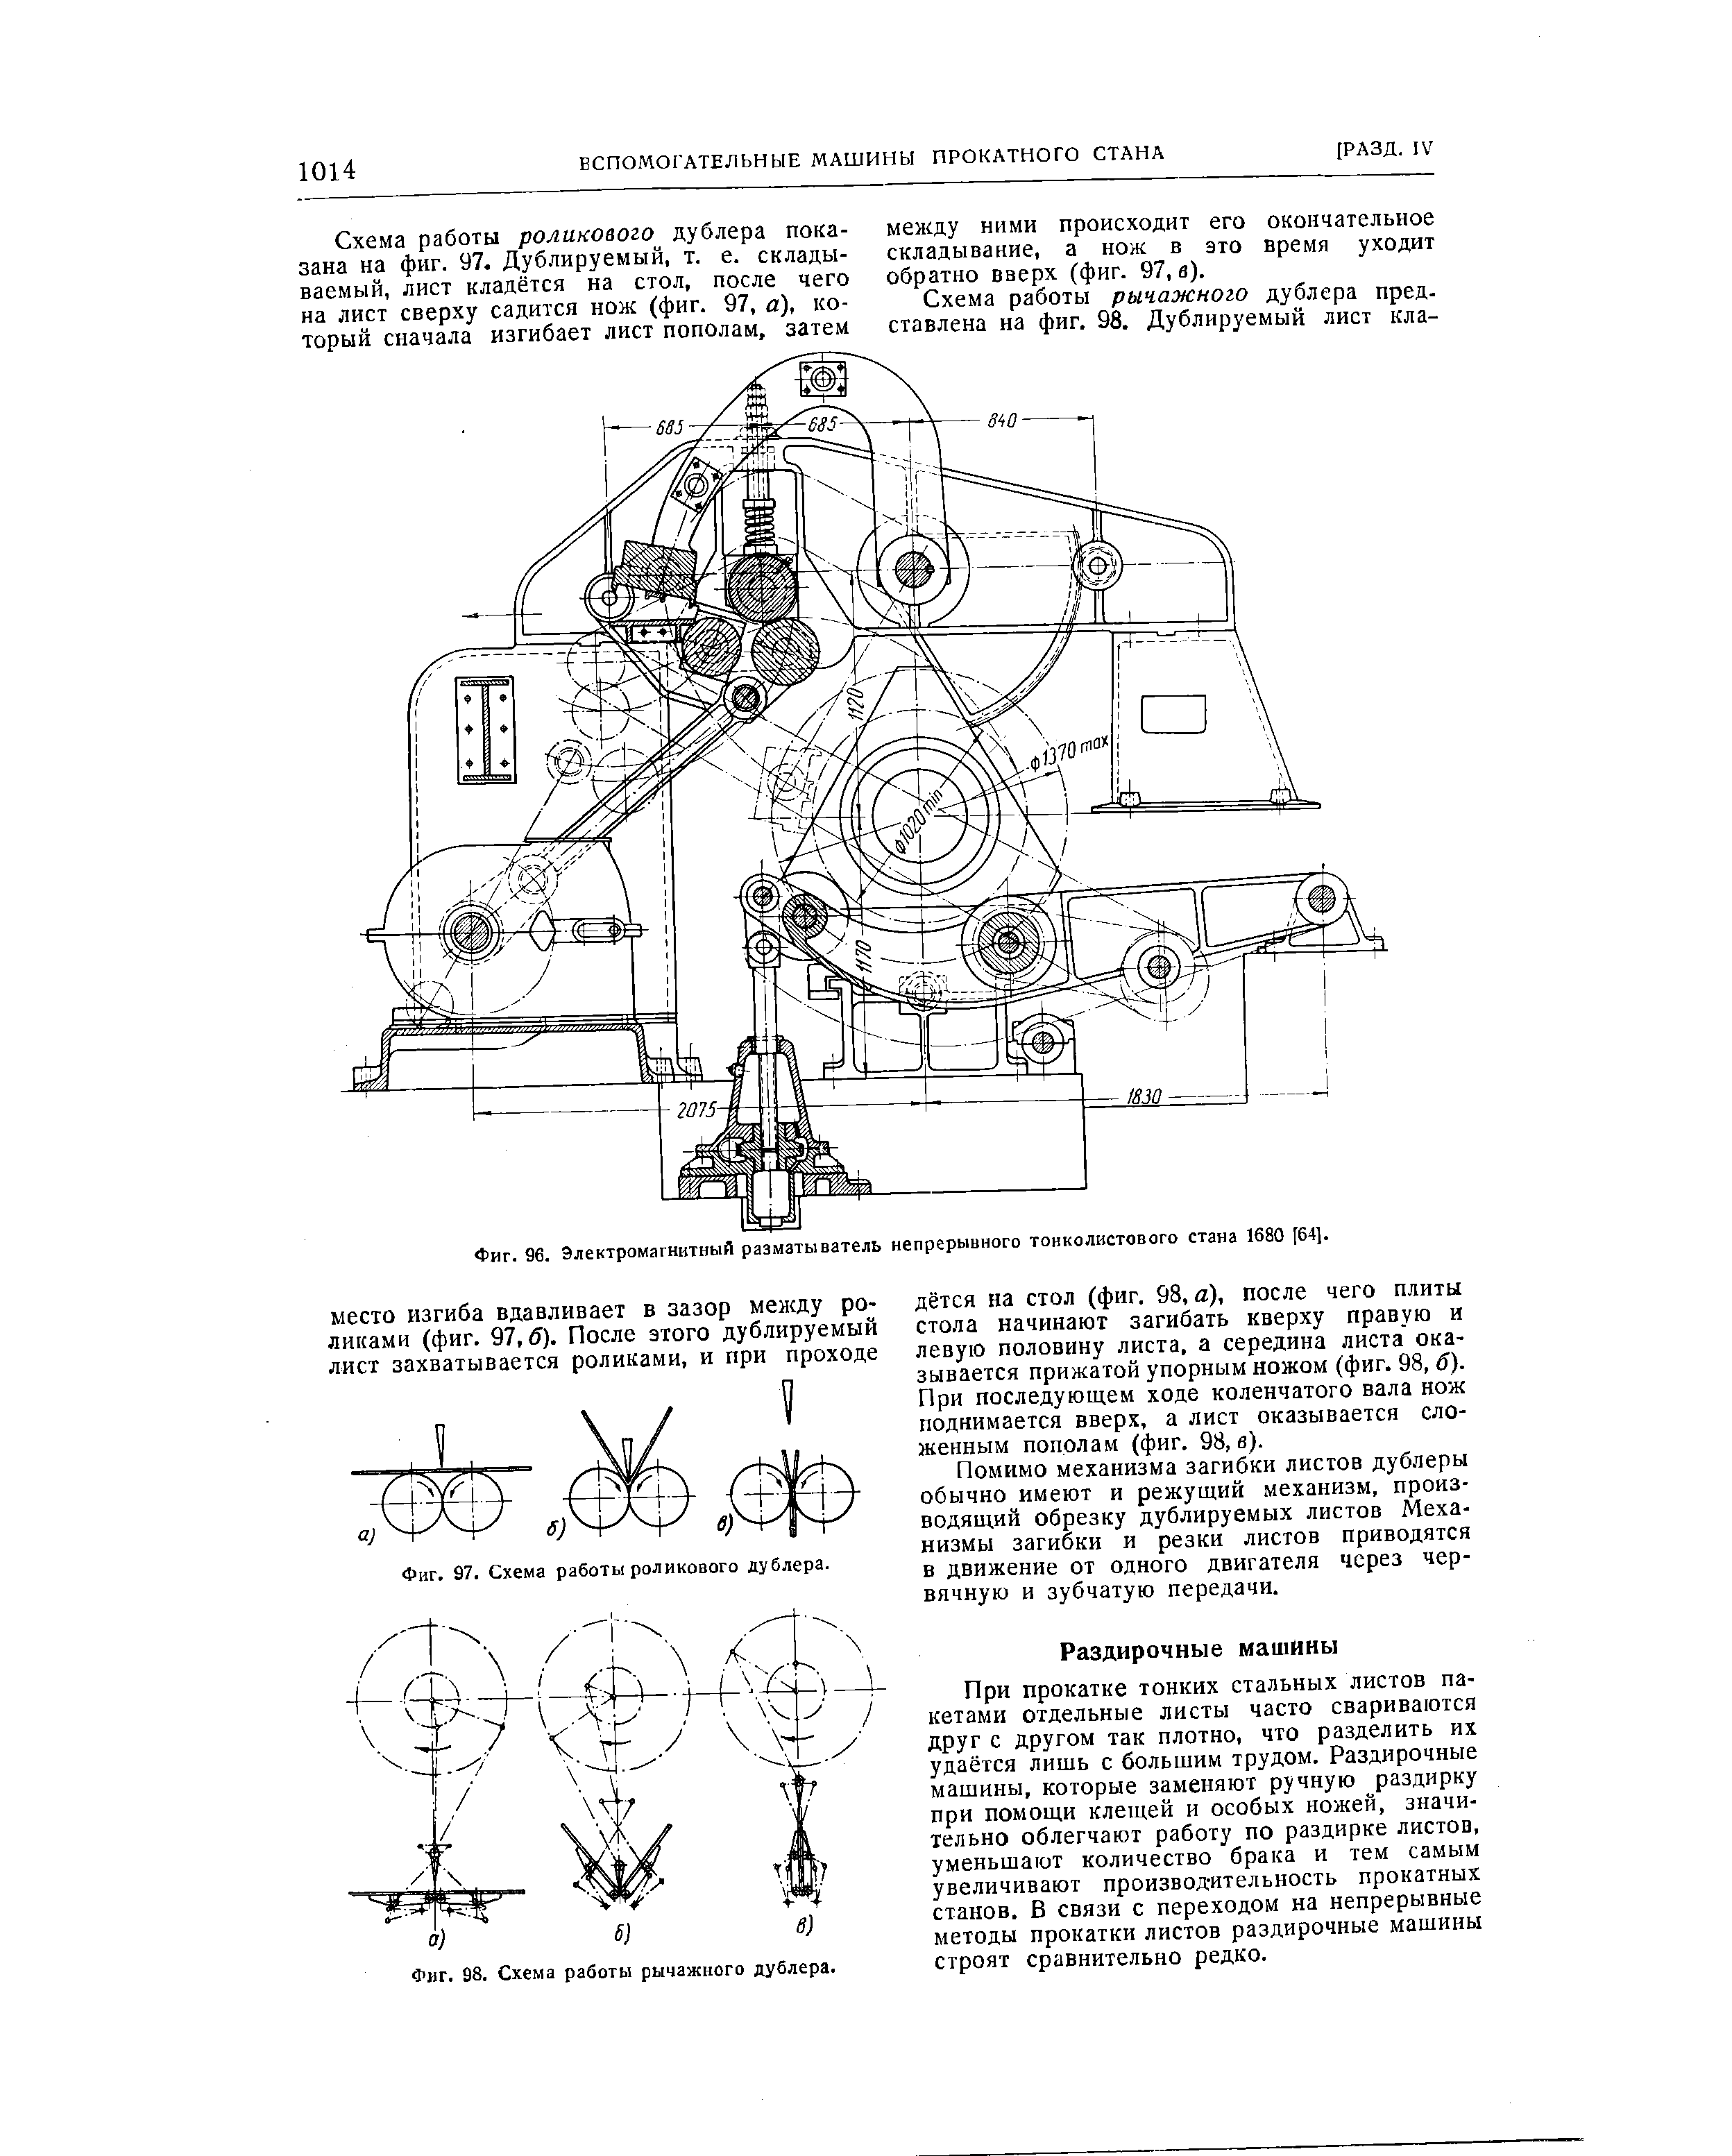 Фиг. 96. Электромагнитный разматыватель непрерывного тонколистового стана 1680 [64].
